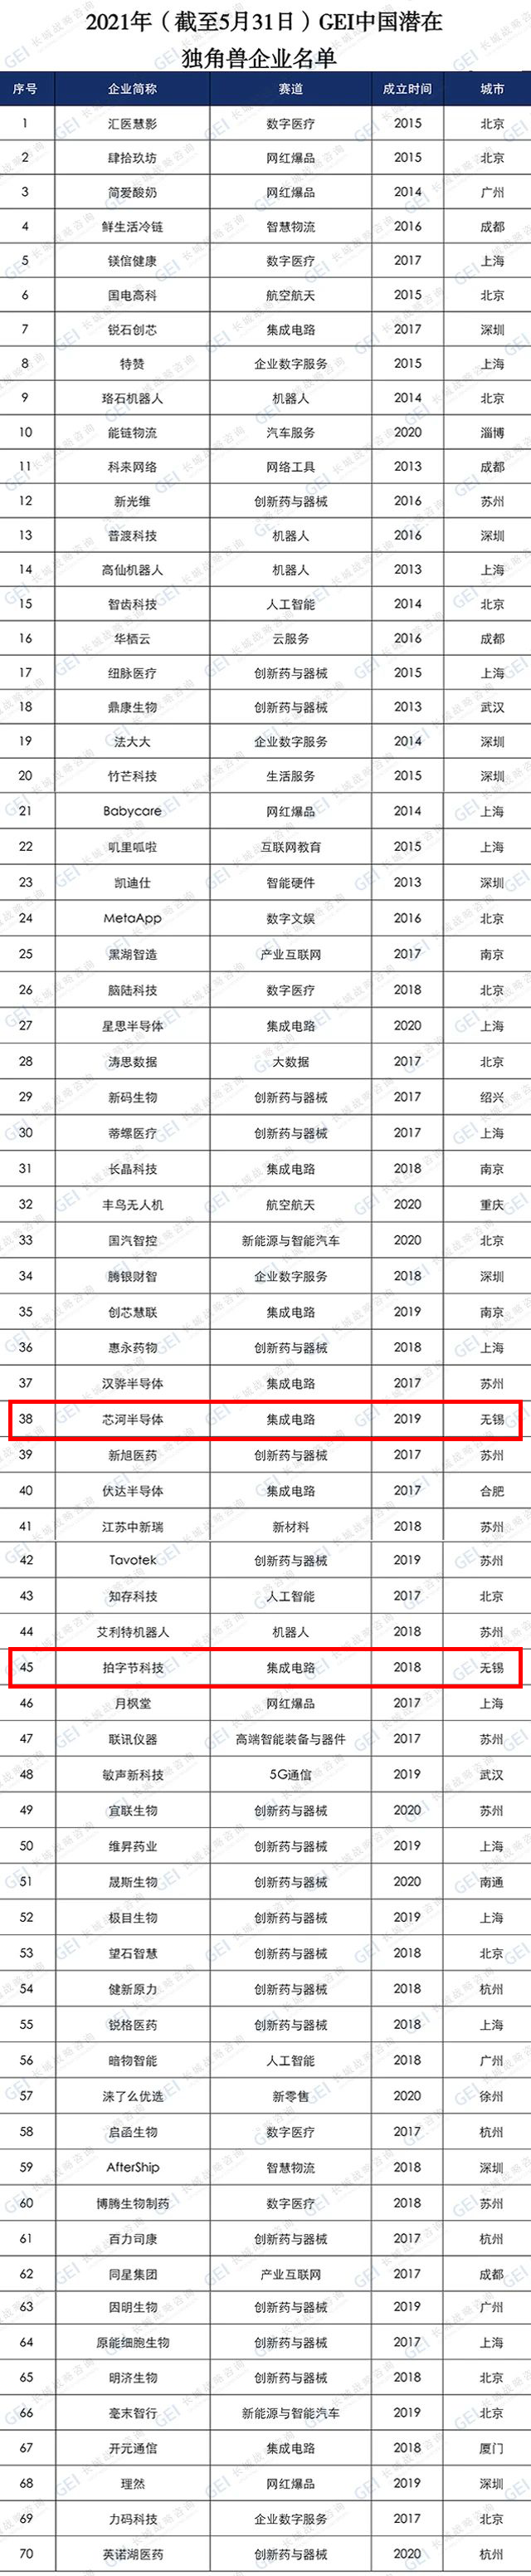 2021中国潜在独角兽企业名单